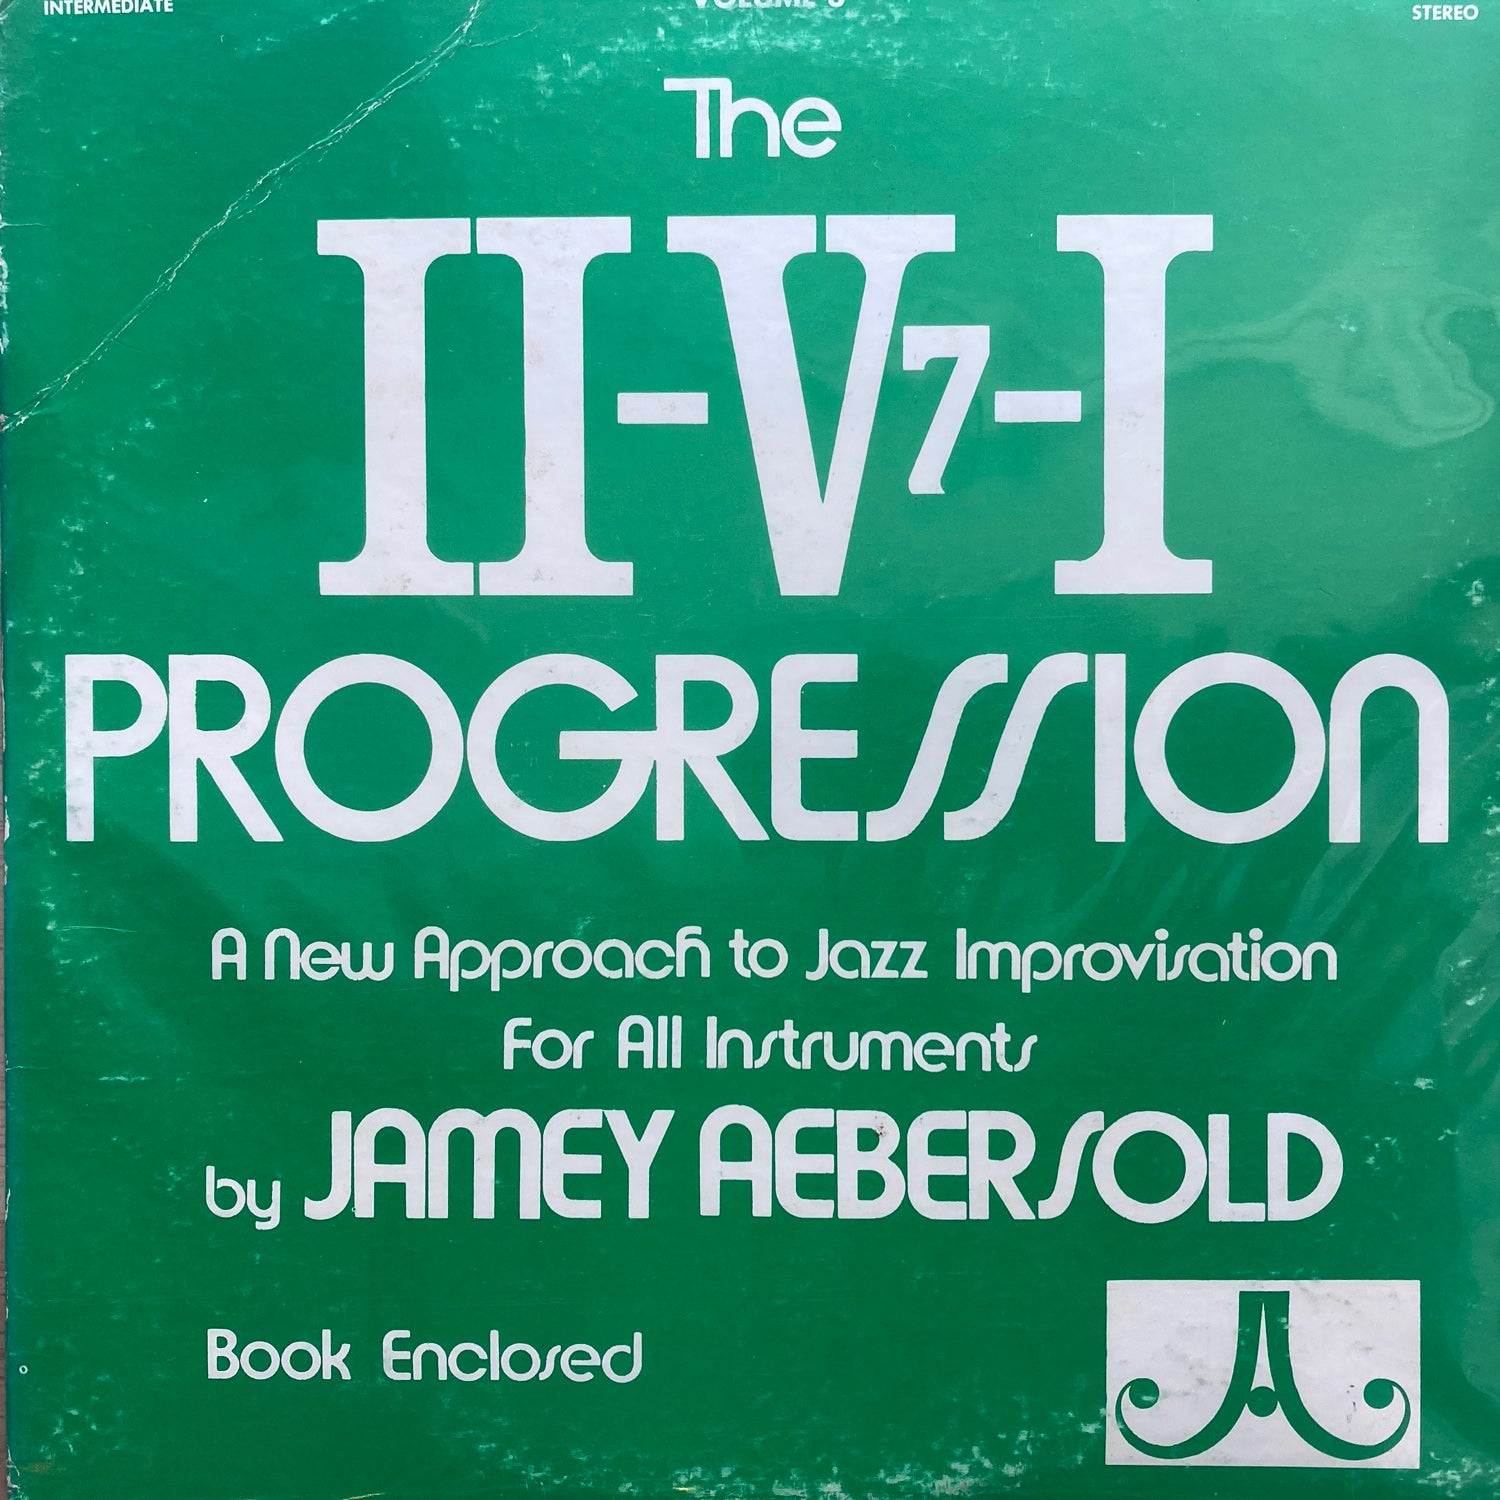 Jamey Aebersold - Volume 3 (II-V7-I Progression)